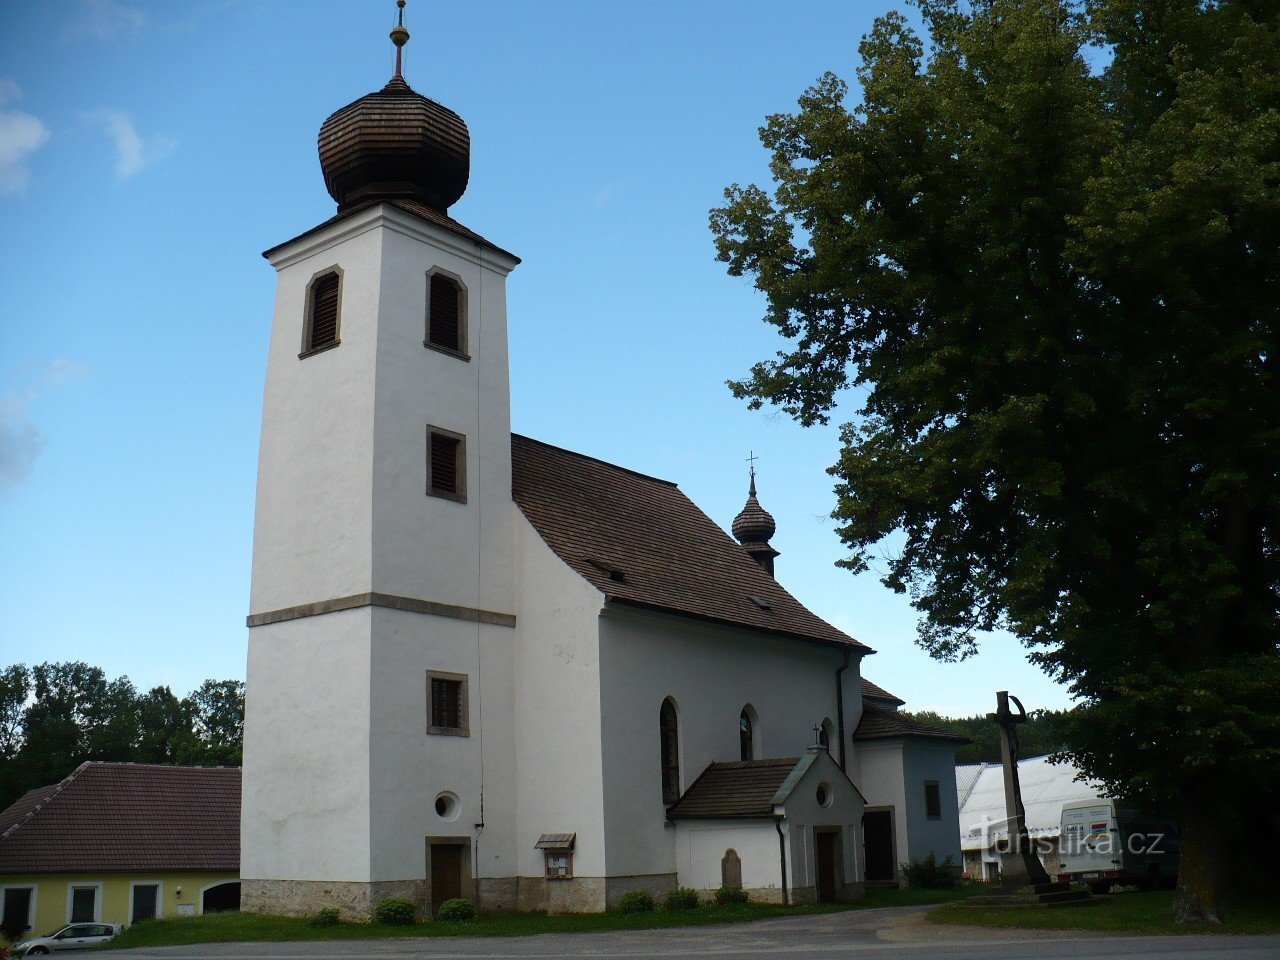 Kirche St. Vavřinec in Český Rudolec